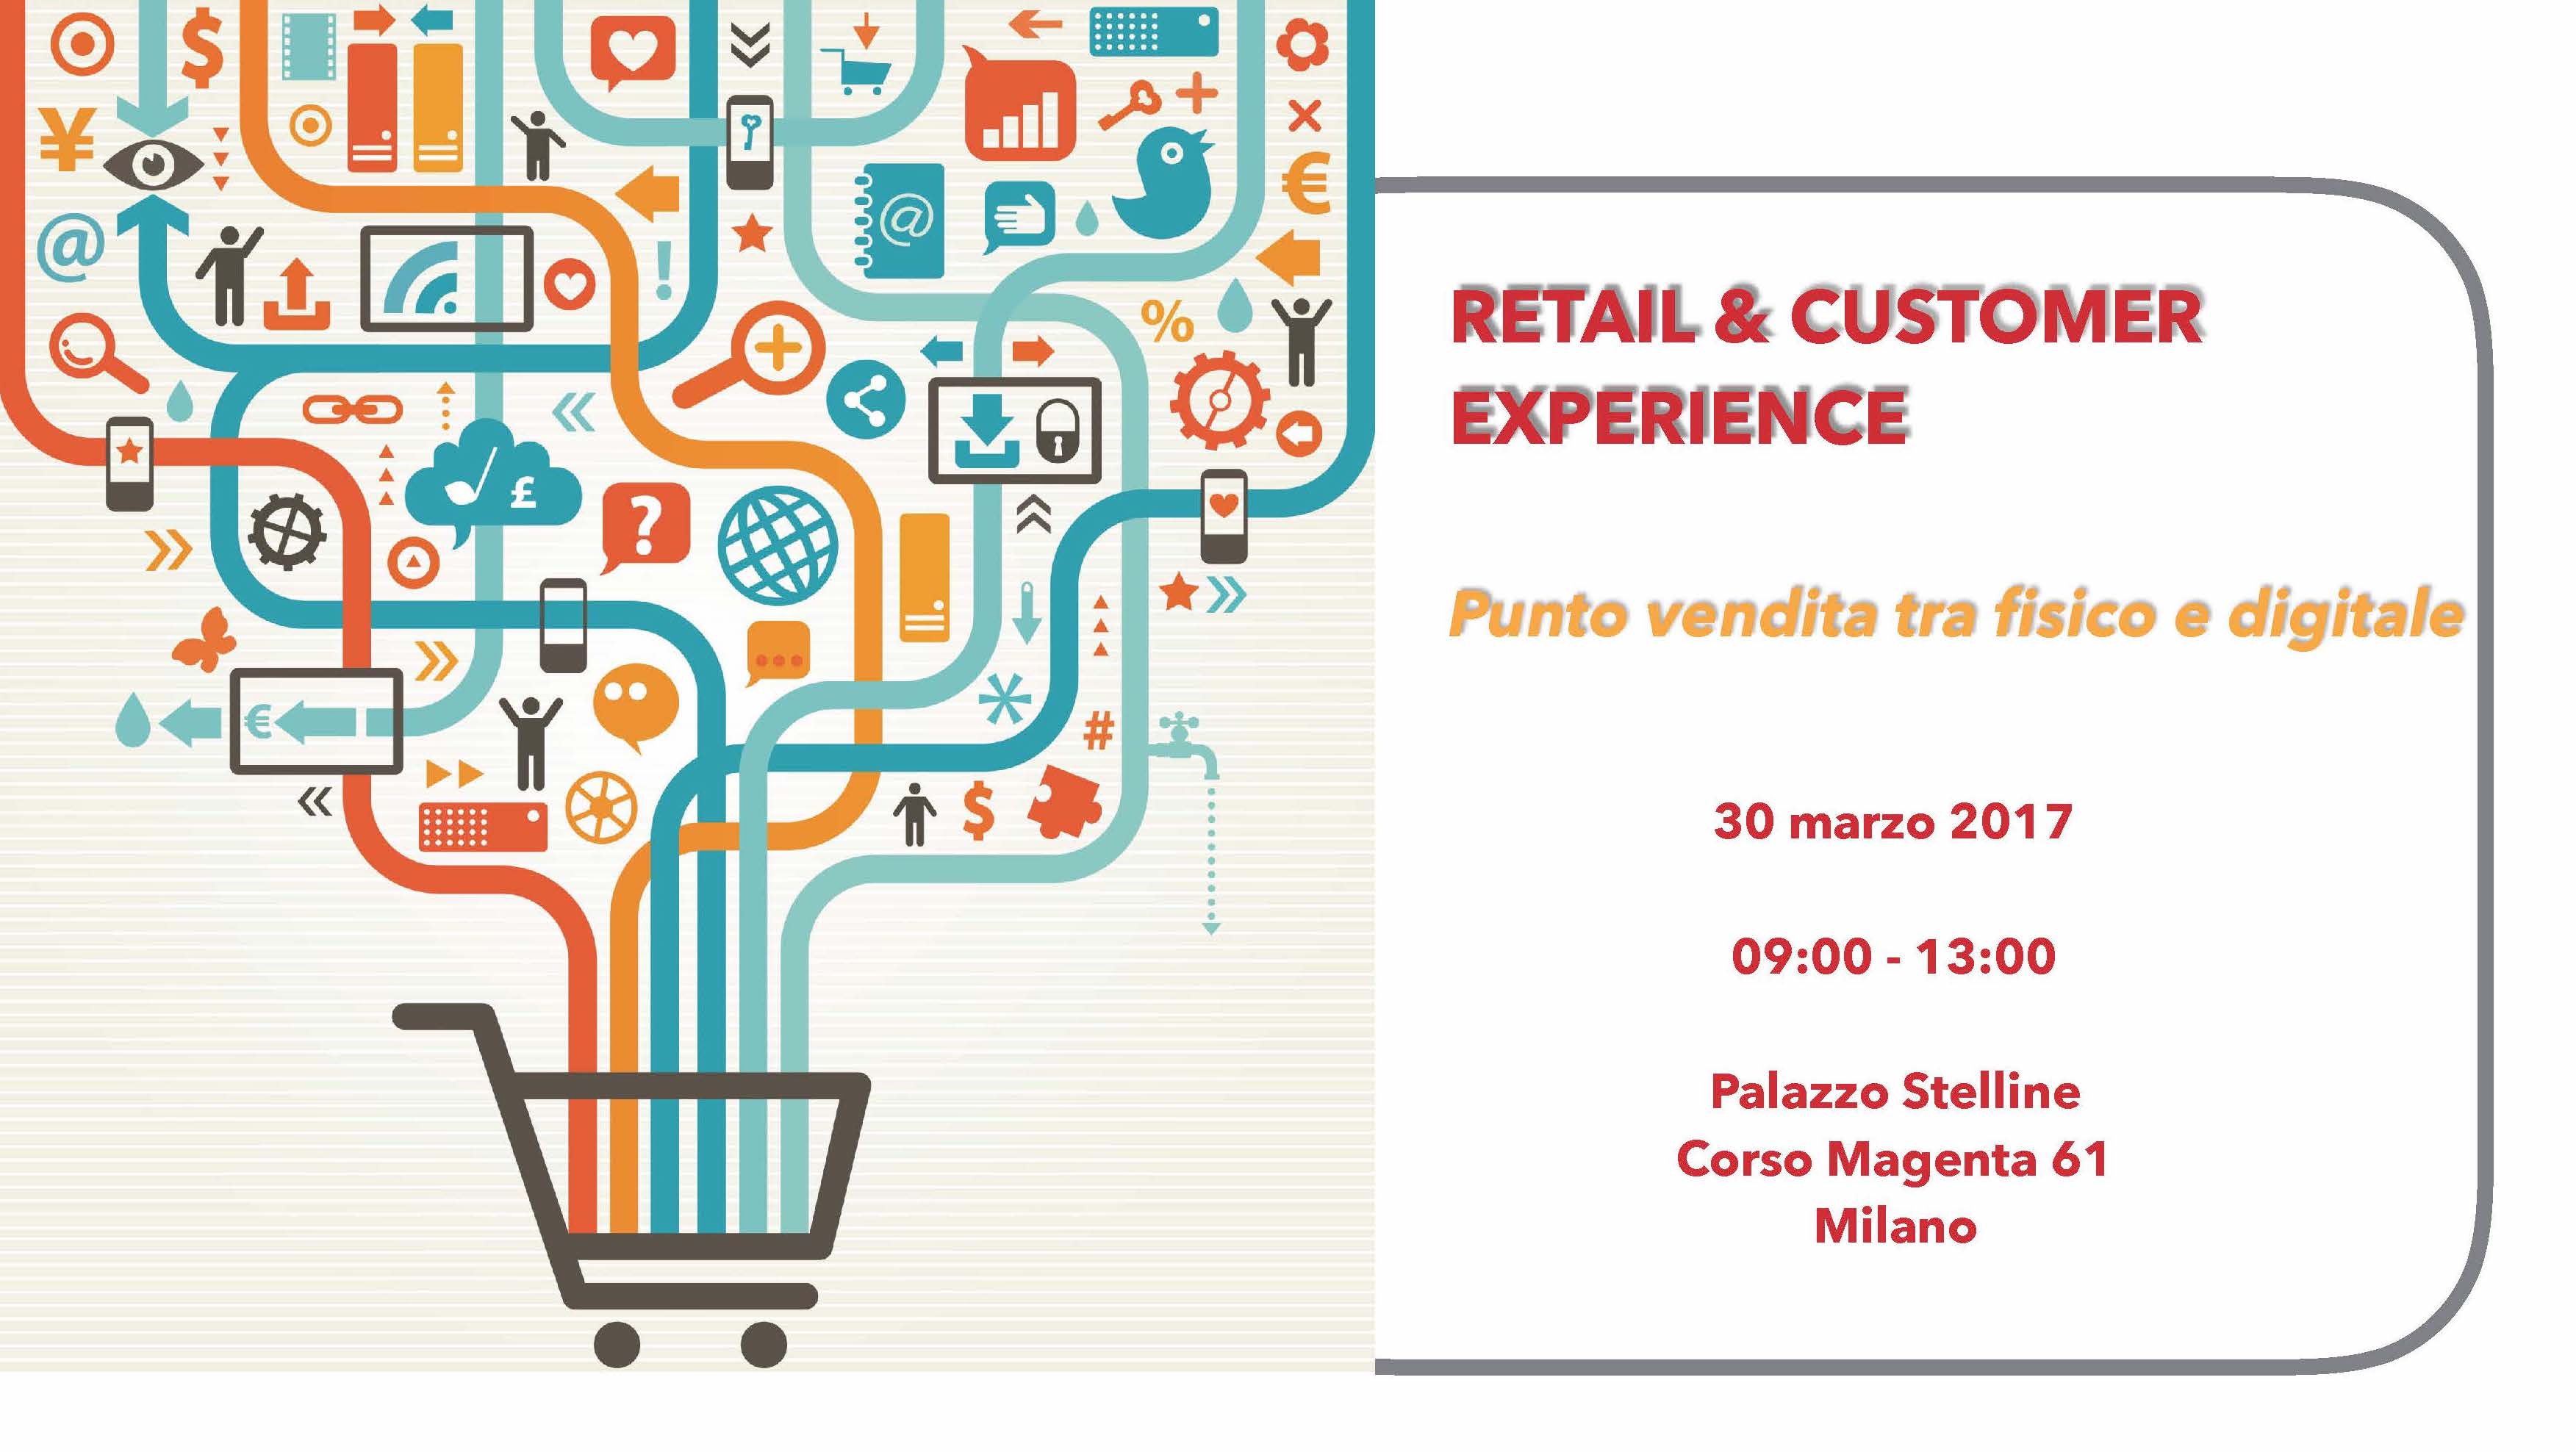 Retail & Customer Experience – Punto vendita tra fisico e digitale